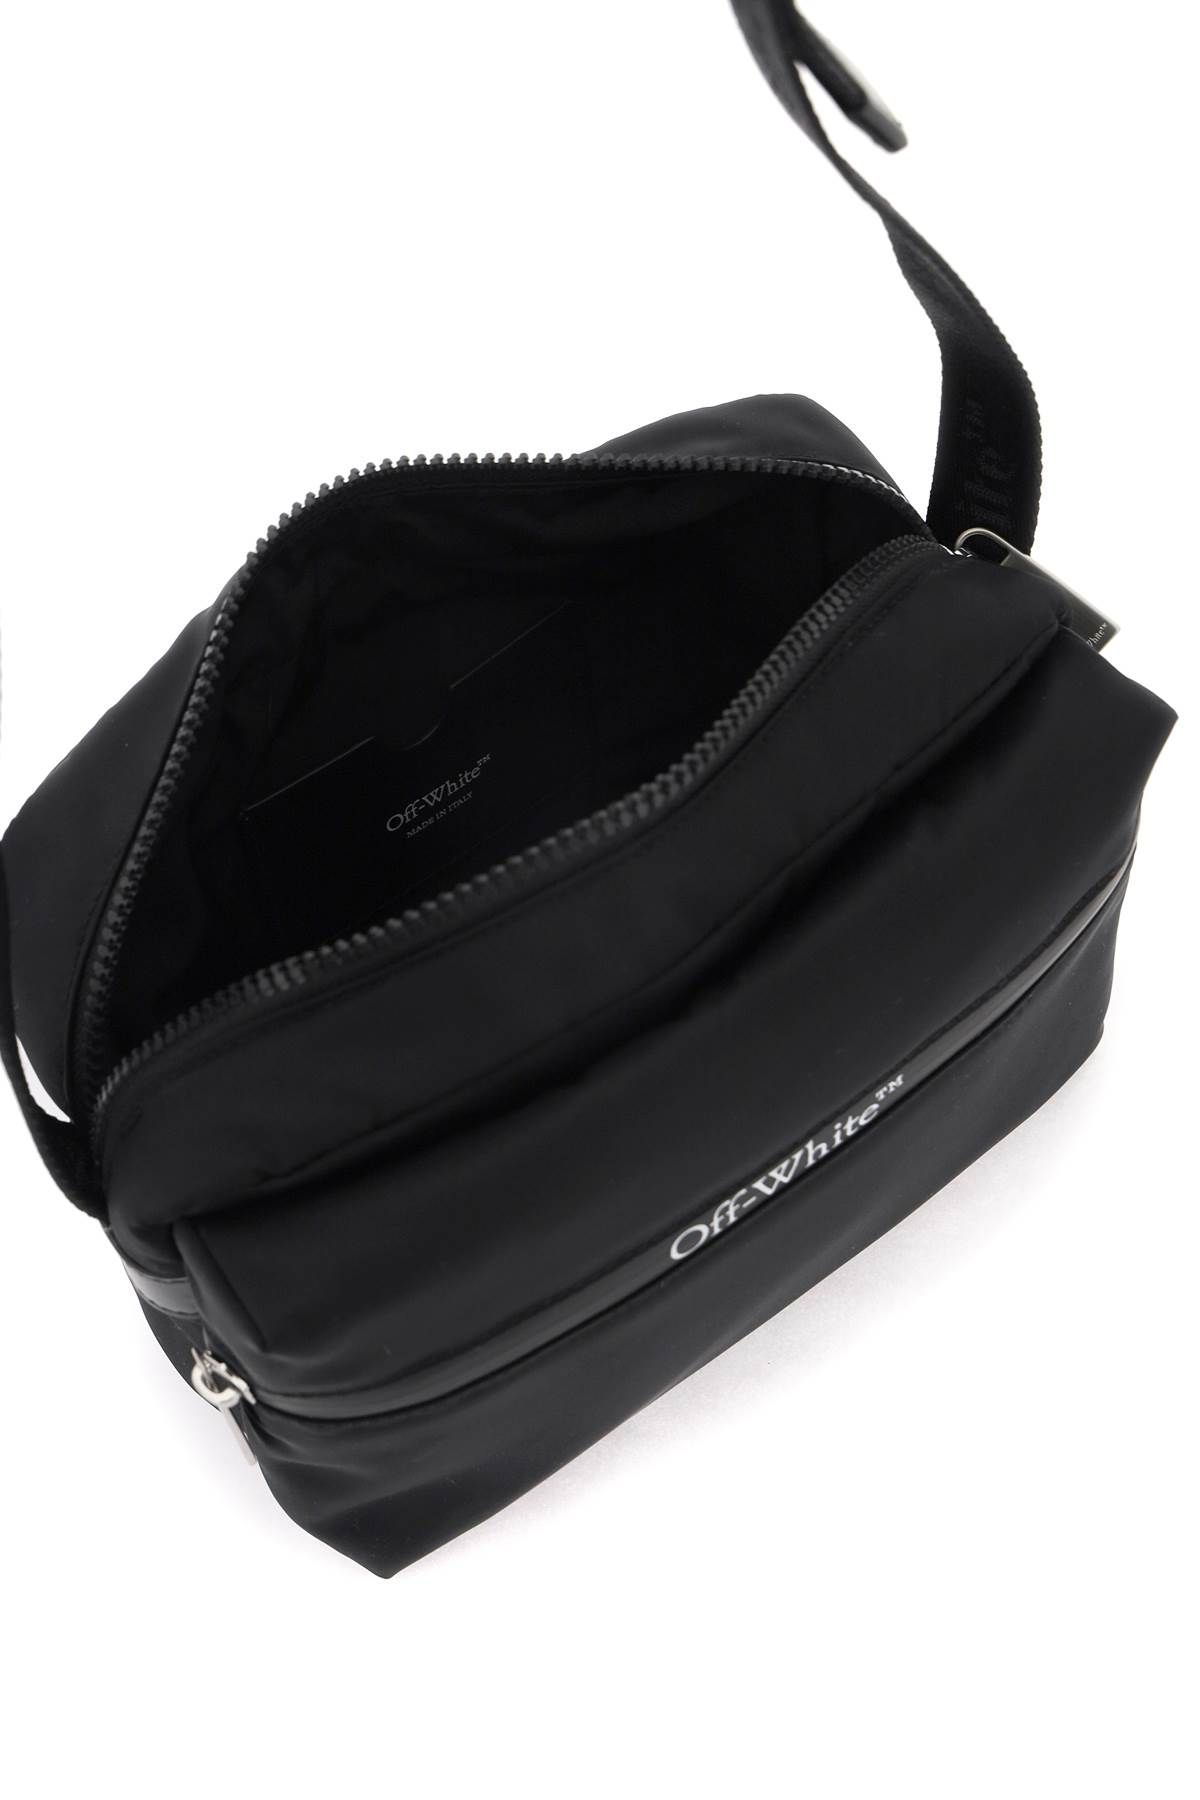 Shop Off-white Outdoor Shoulder Bag In Black